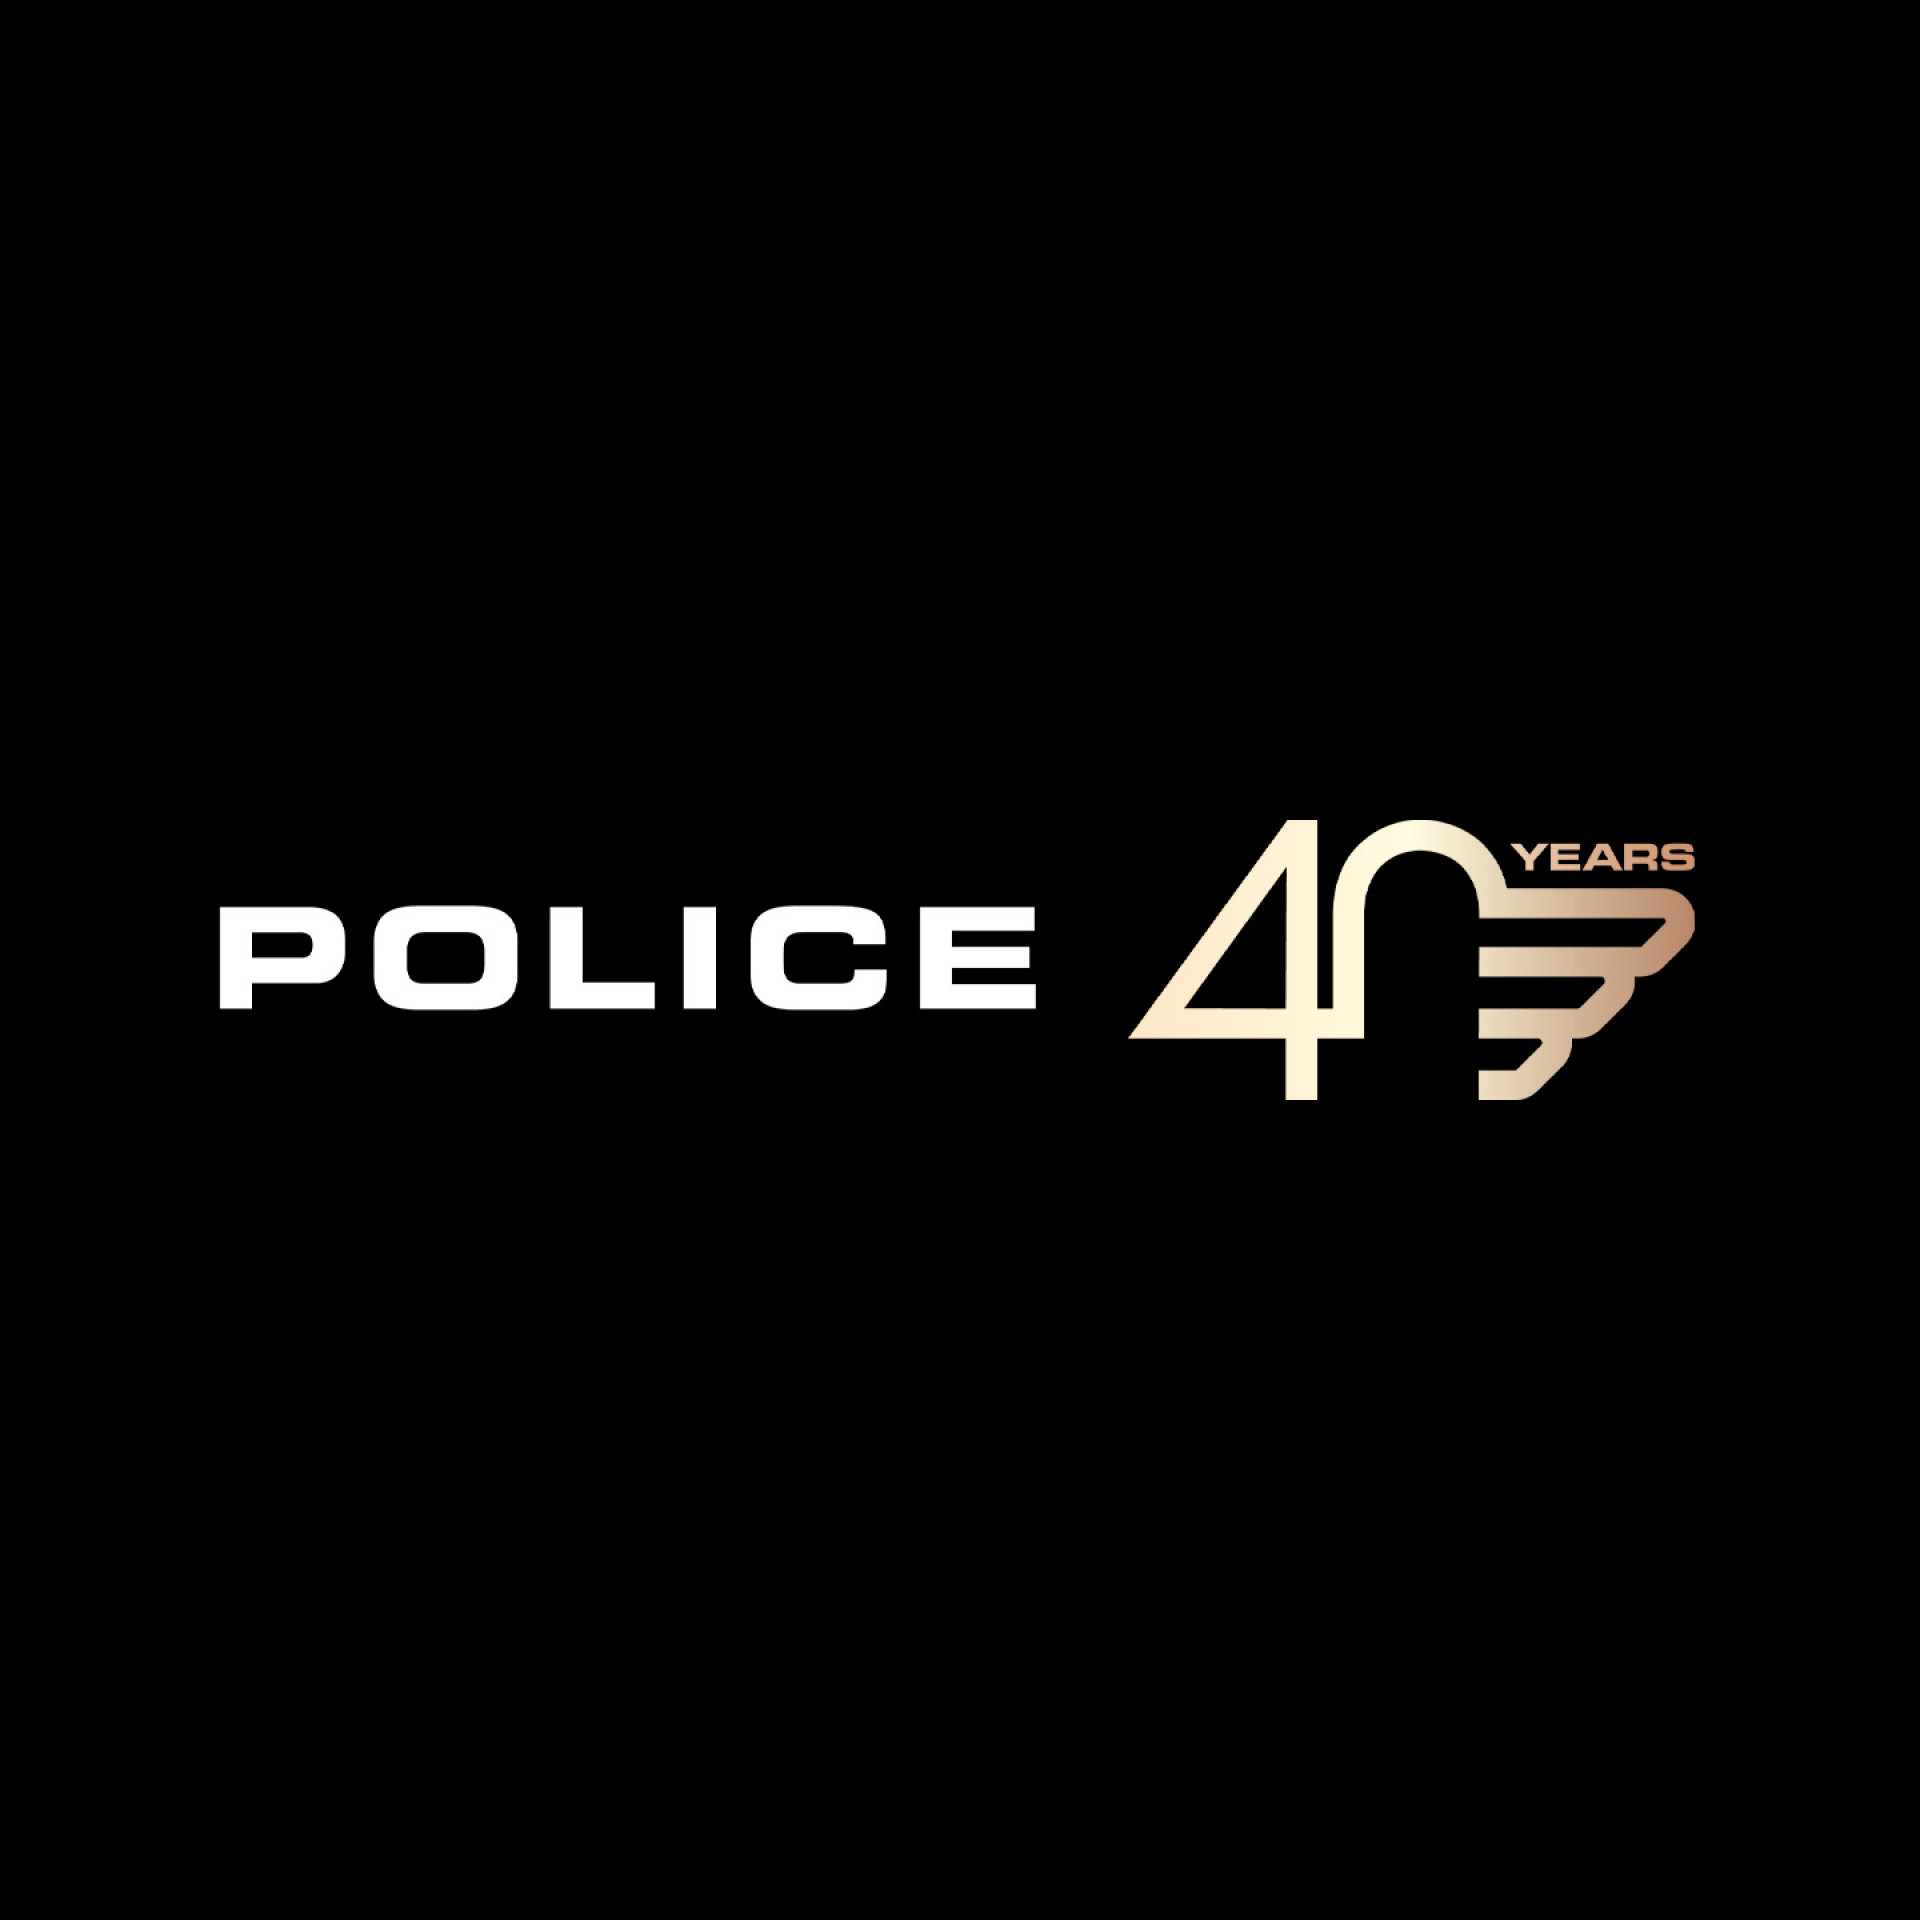 POLICE COMPIE 40 ANNI